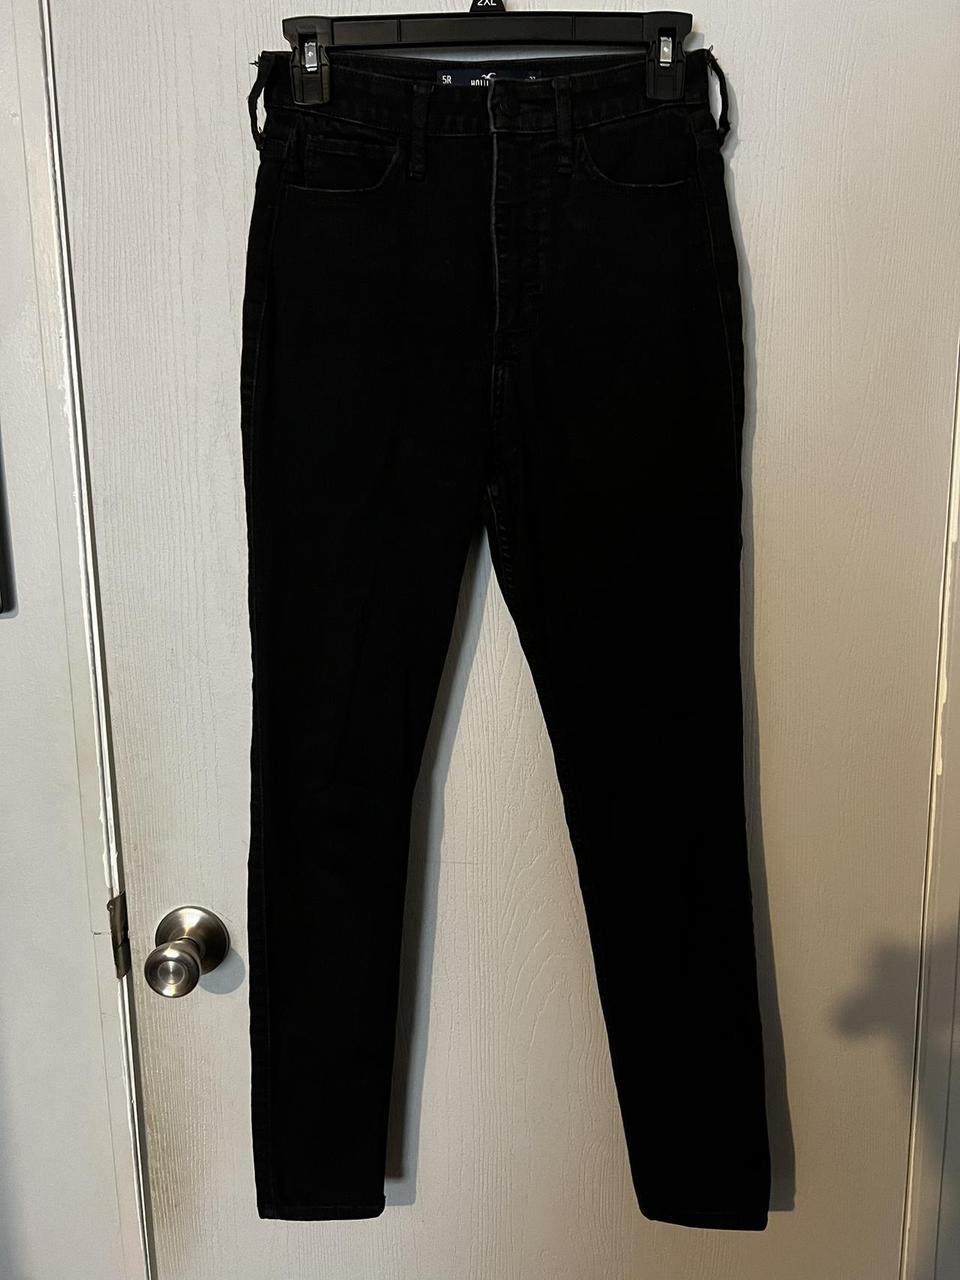 Hollister Jeans Size 5R Hollister Super Skinny High - Depop